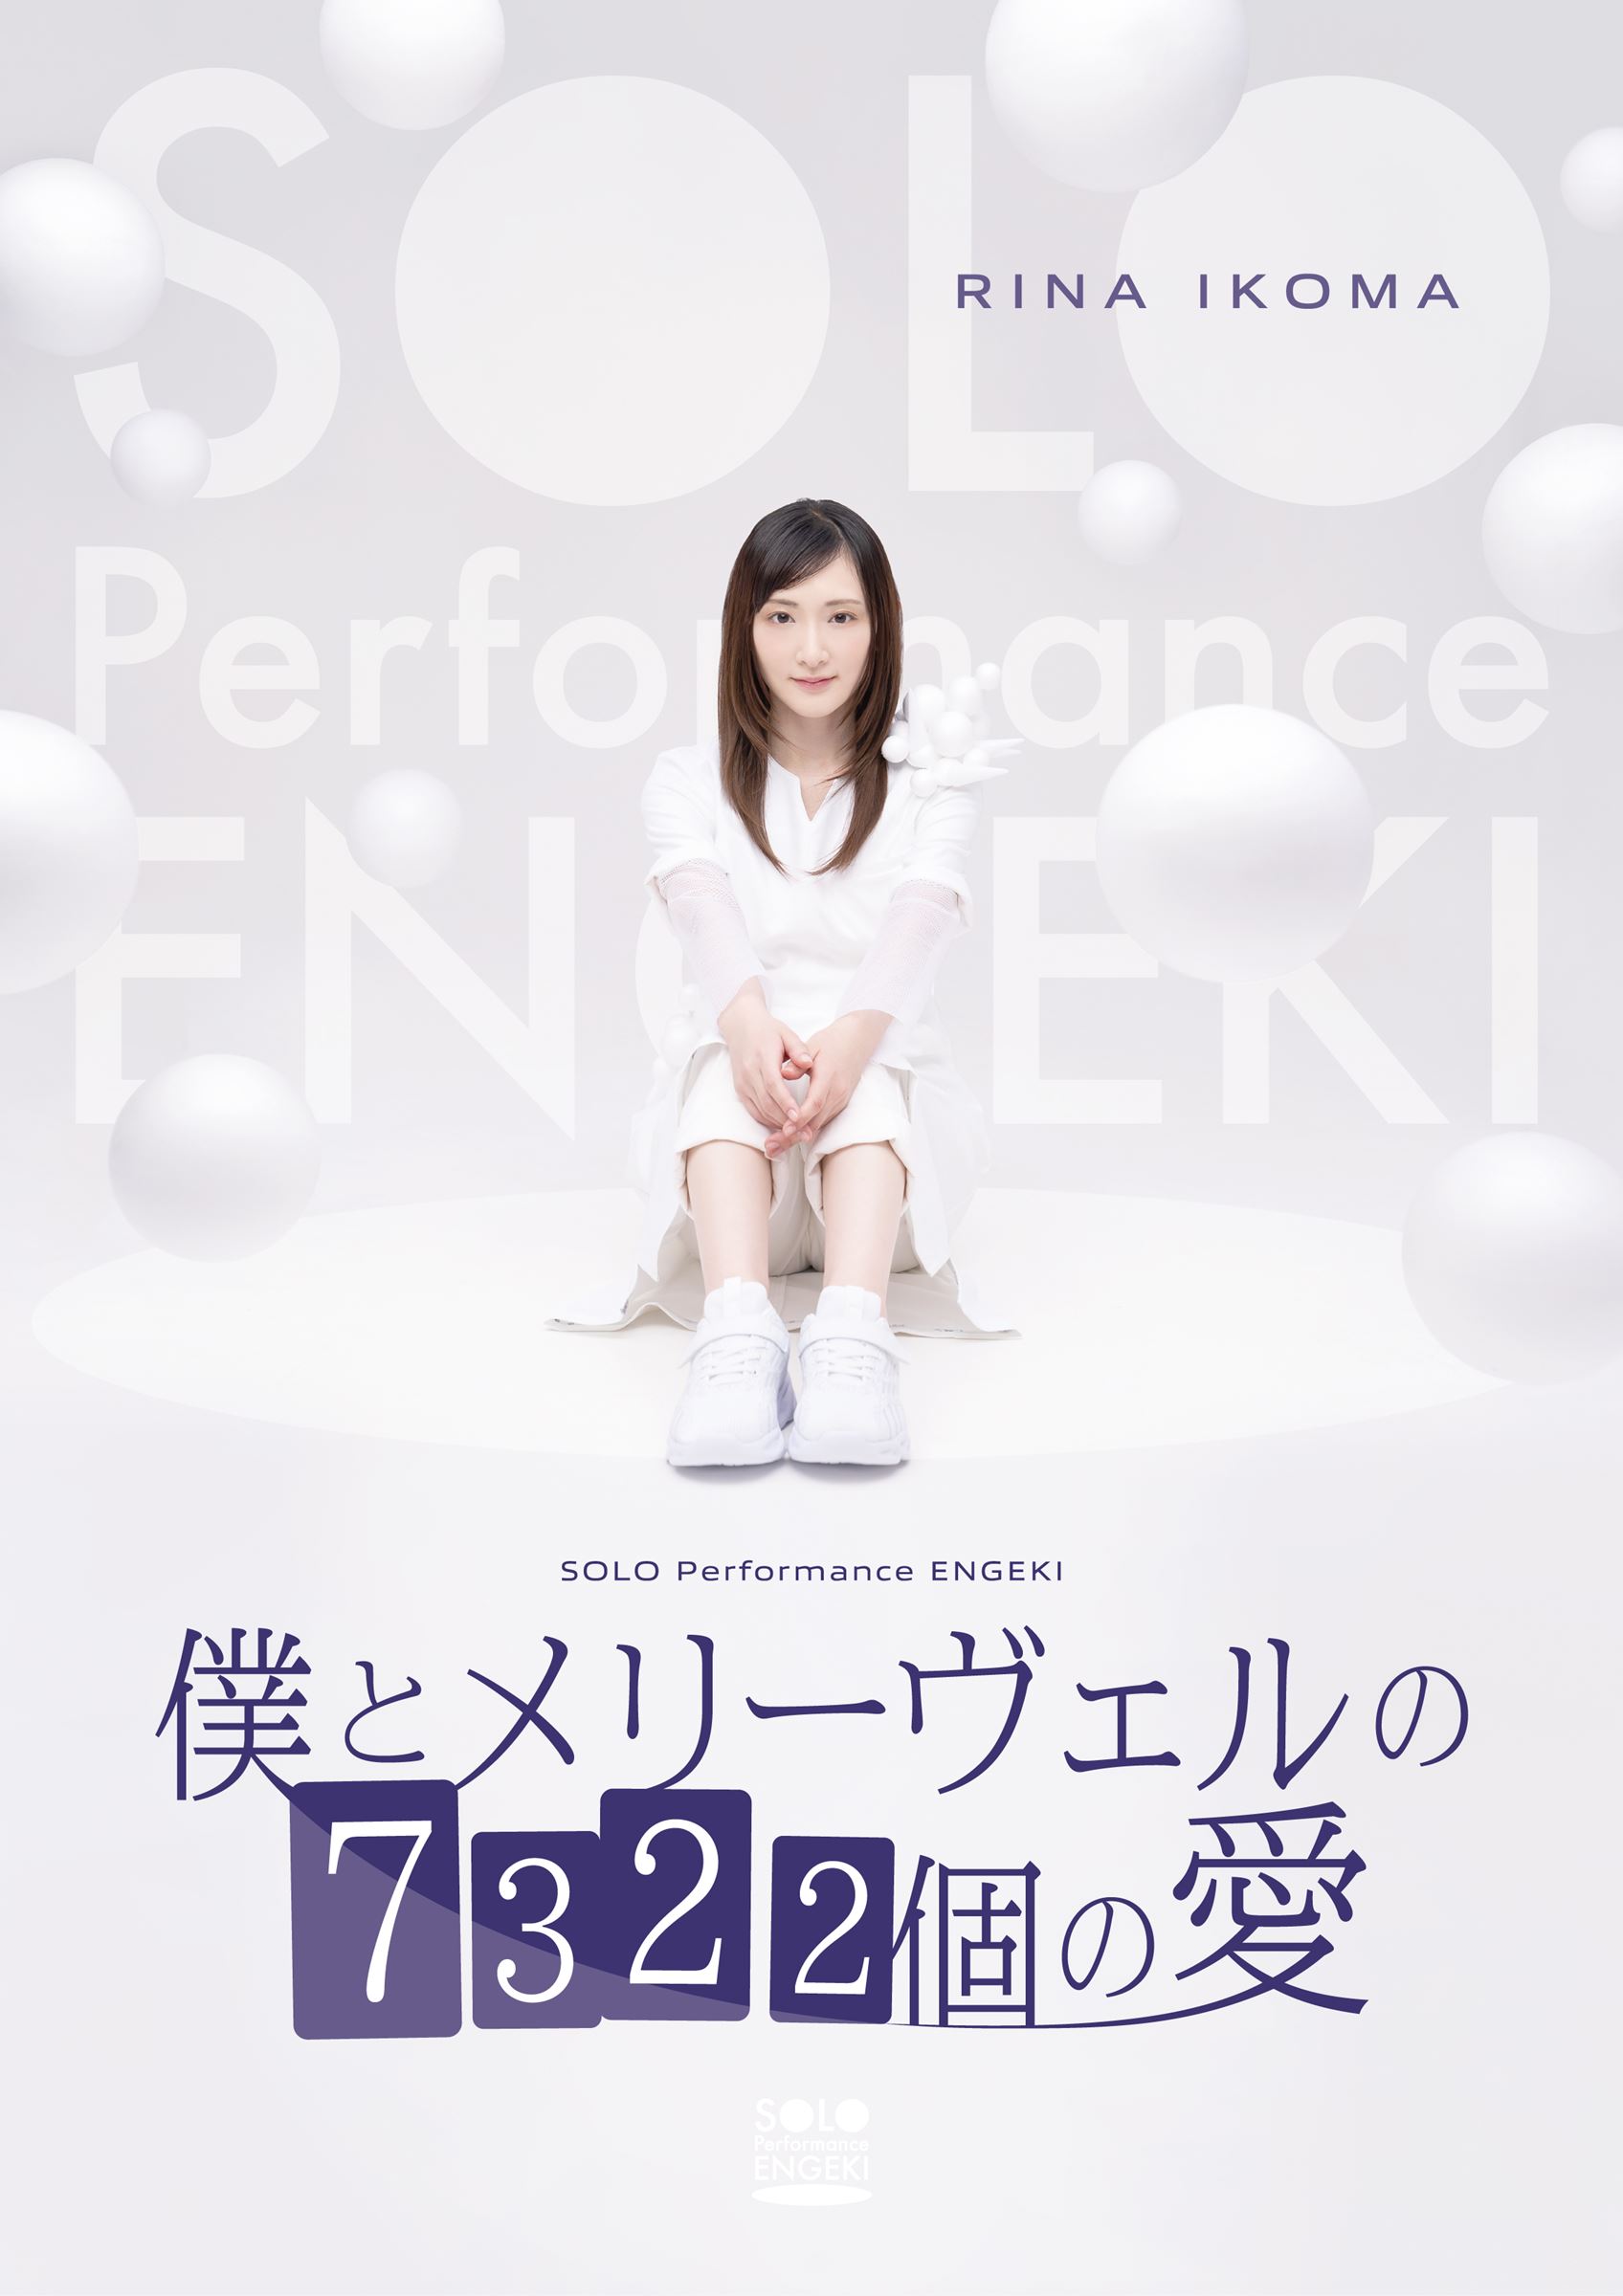 生駒里奈 SOLO Performance ENGEKI 『僕とメリーヴェルの7322個の愛』 (c)東映